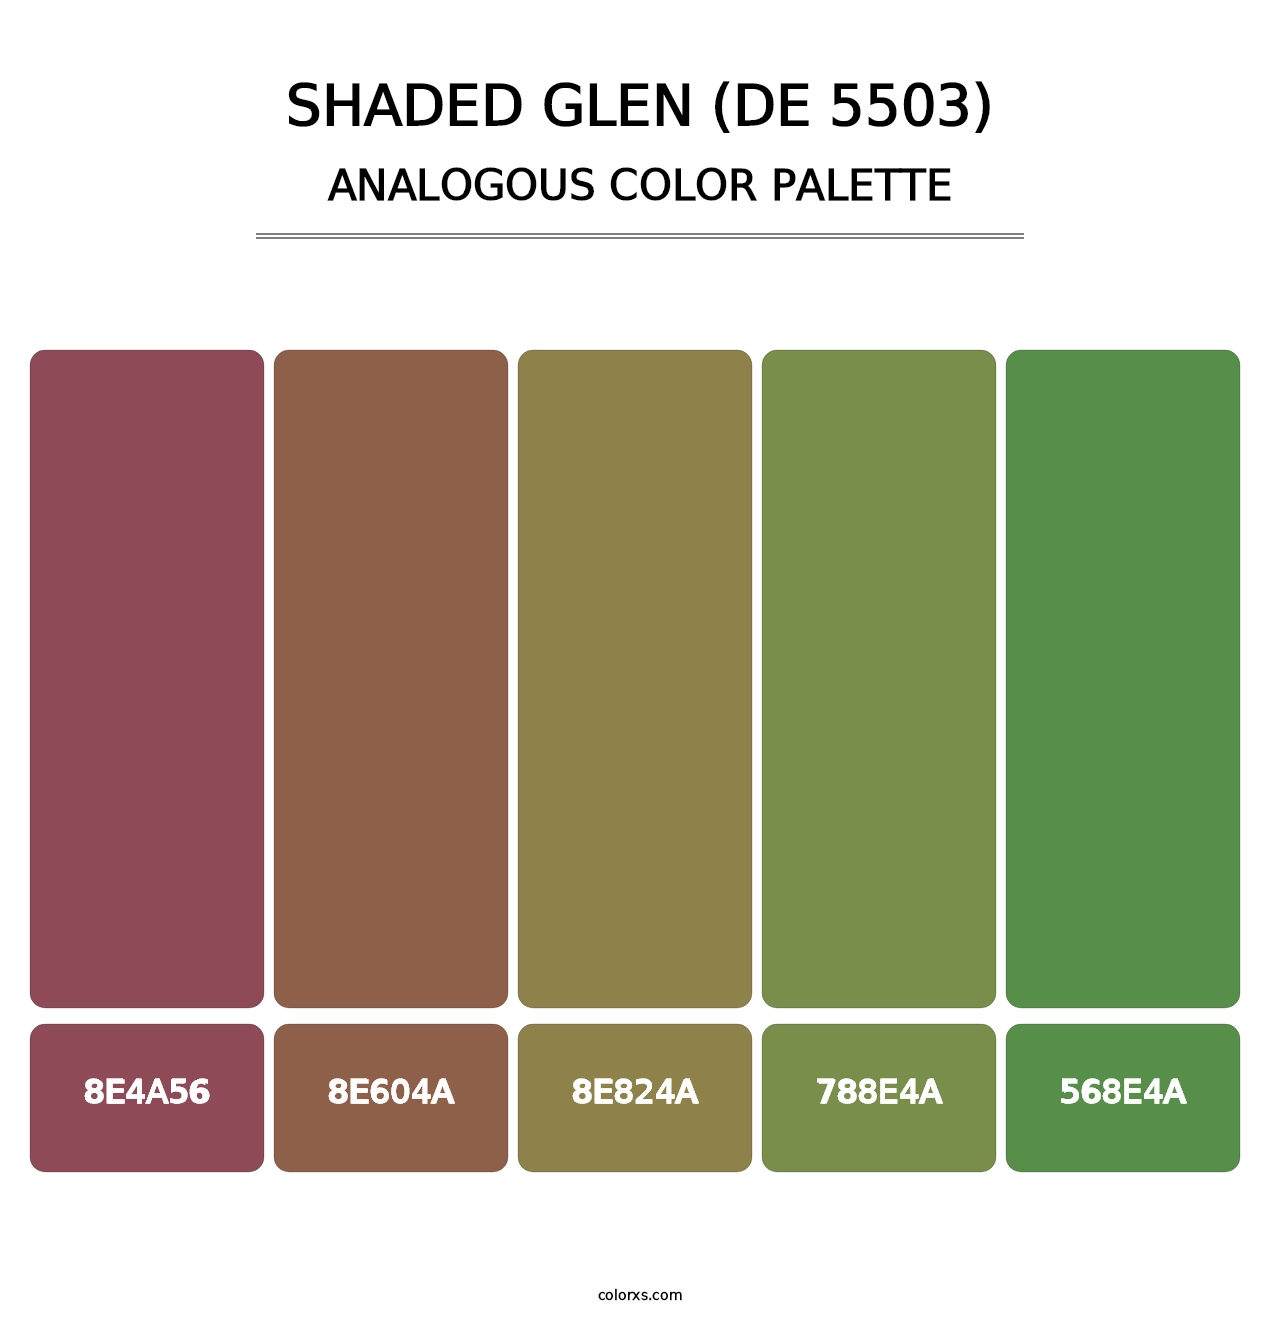 Shaded Glen (DE 5503) - Analogous Color Palette